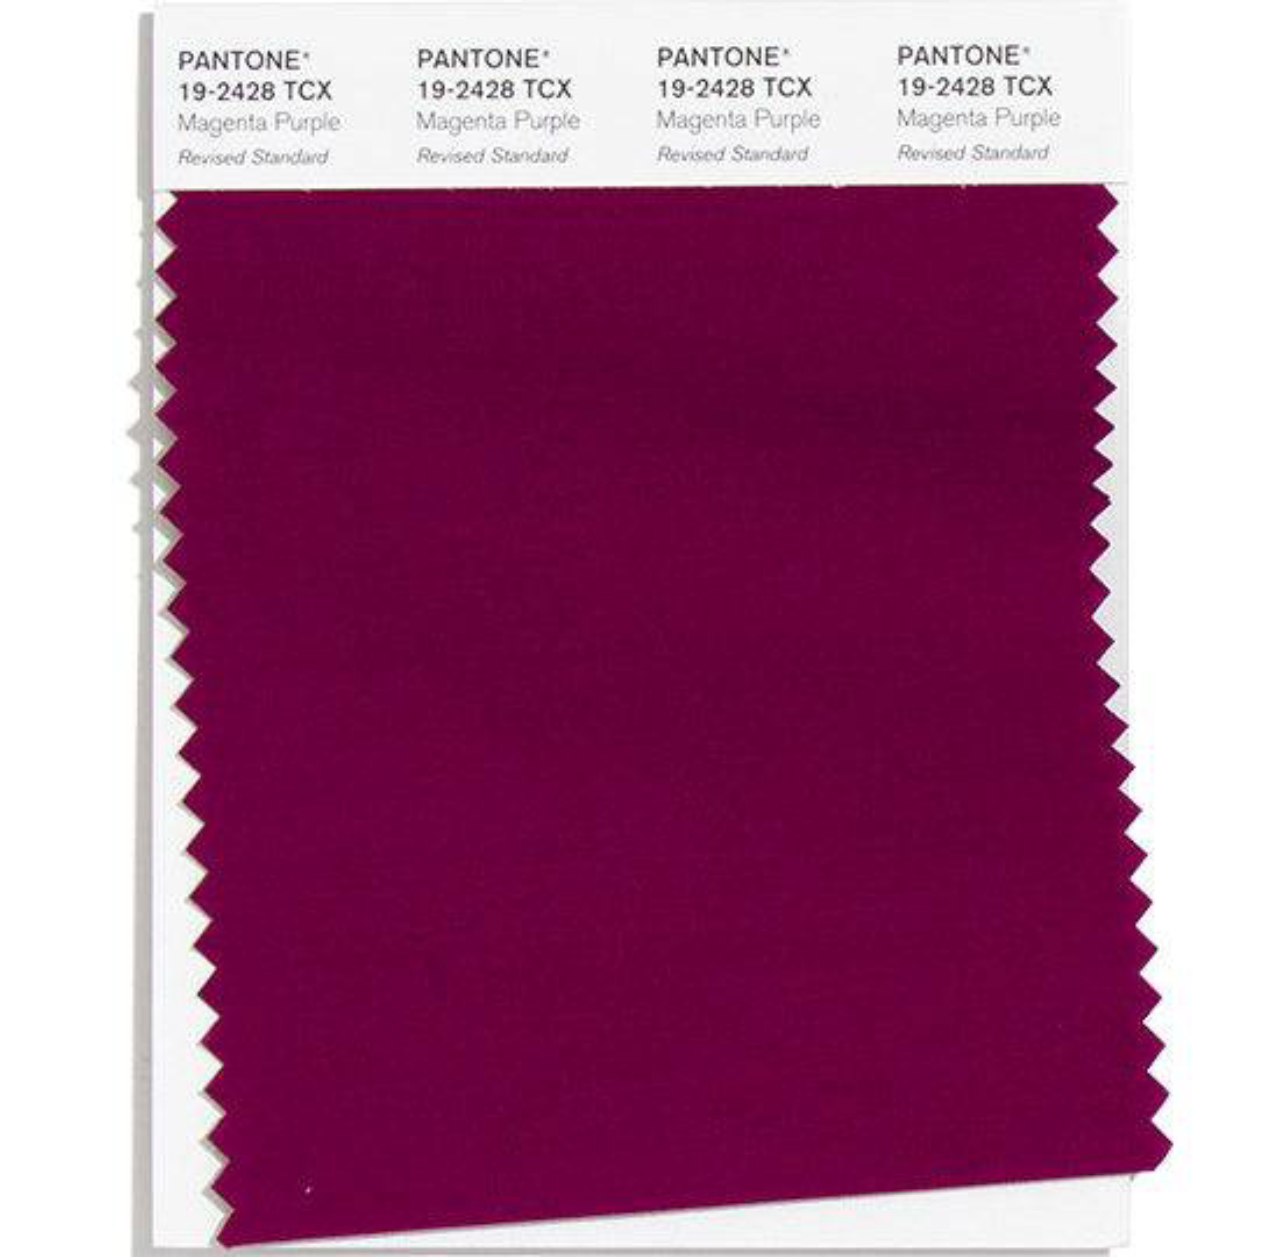 O roxo vibrante é uma das cores do verão 2021, de acordo com a Pantone.